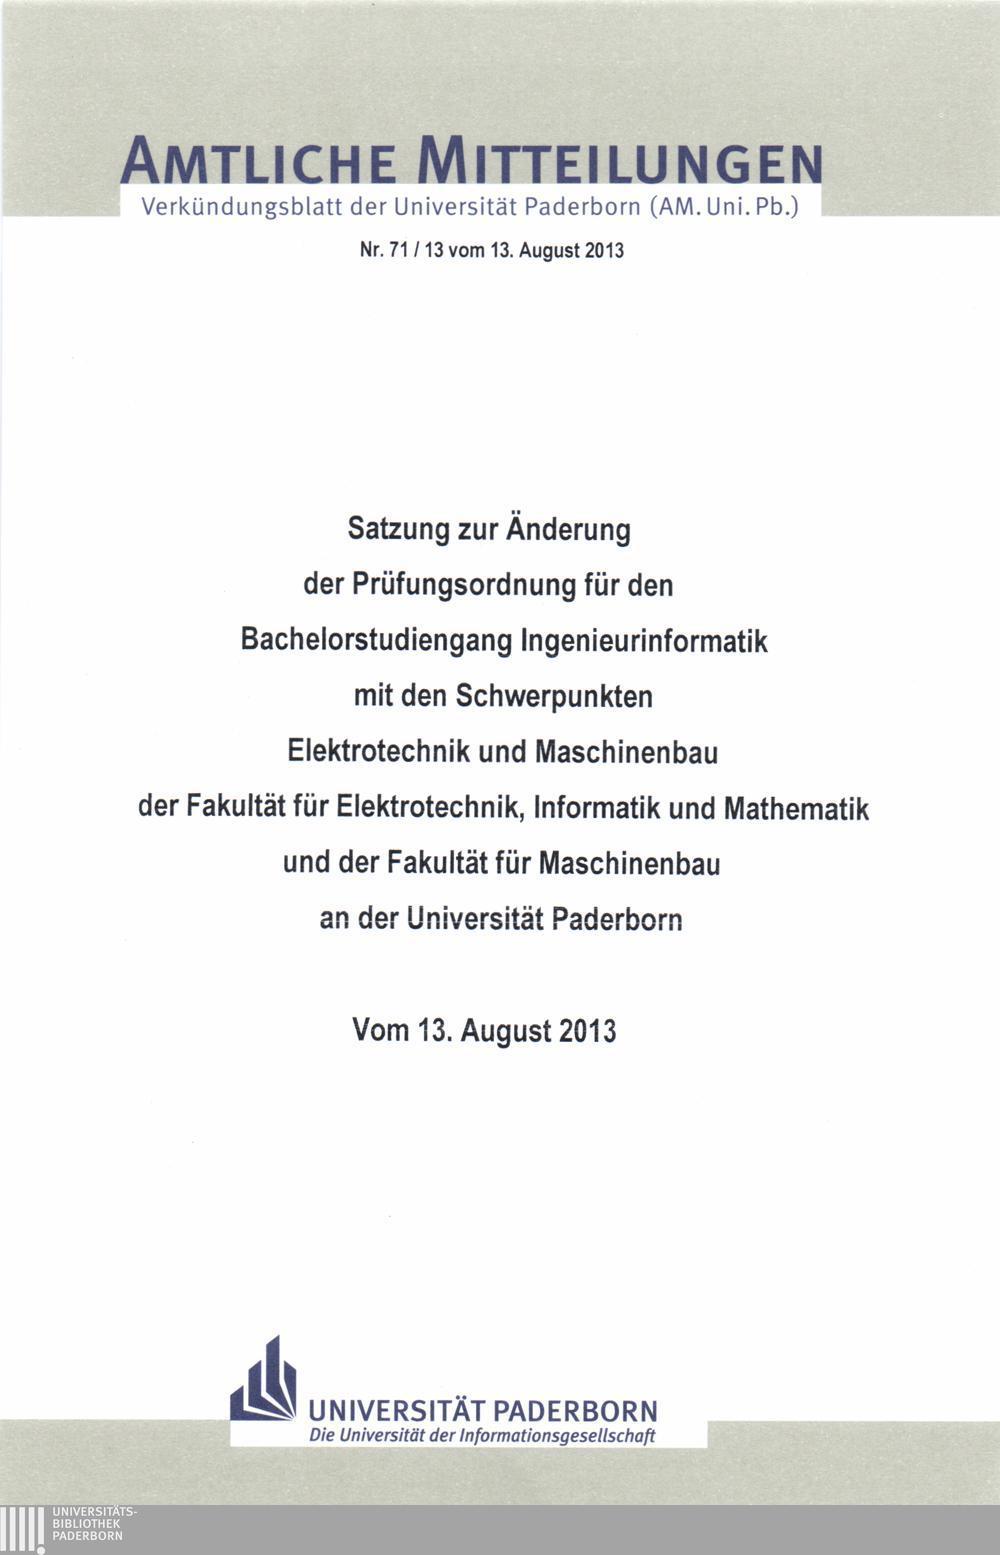 Amtliche Mitteilungen Verkündungsblatt der Universität Paderborn (AM. Uni. Pb.) Nr. 71/13 vom 13.